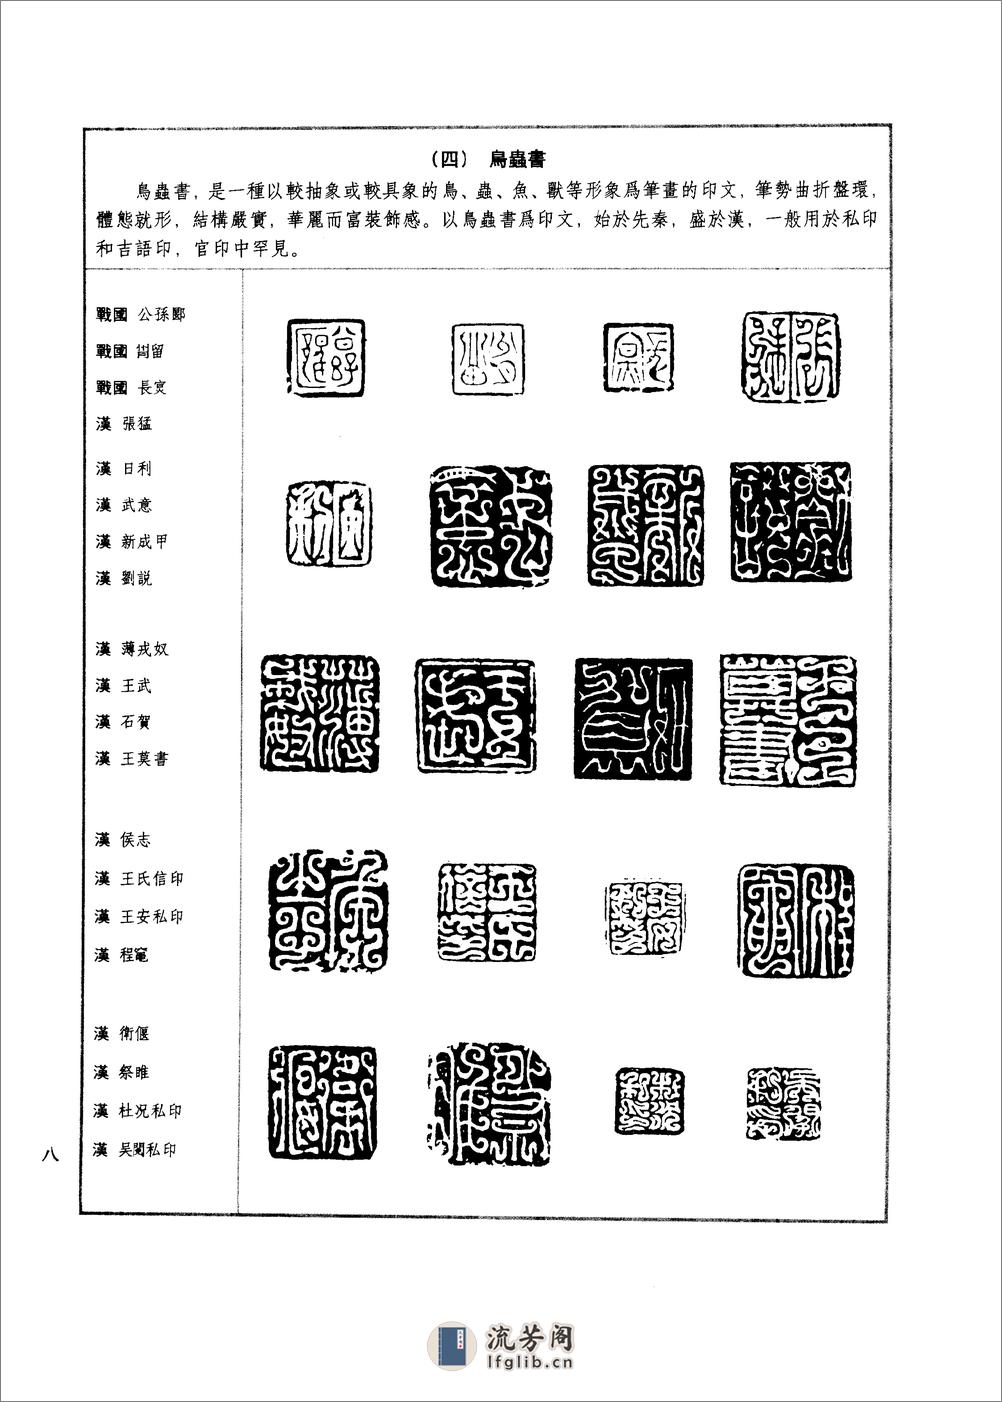 篆刻技法图典 - 第15页预览图